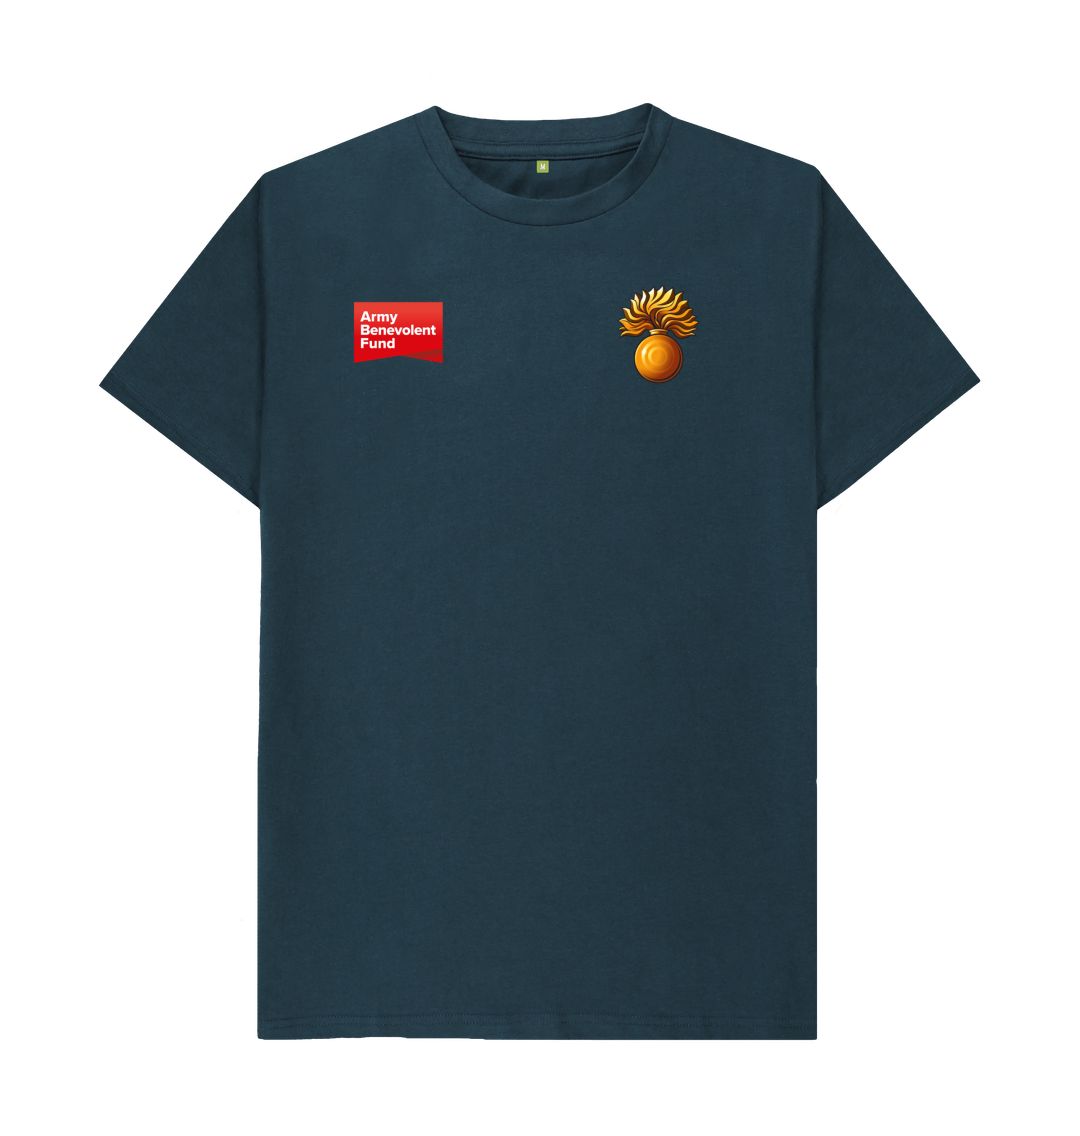 Grenadier Guards Unisex T-shirt - Army Benevolent Fund